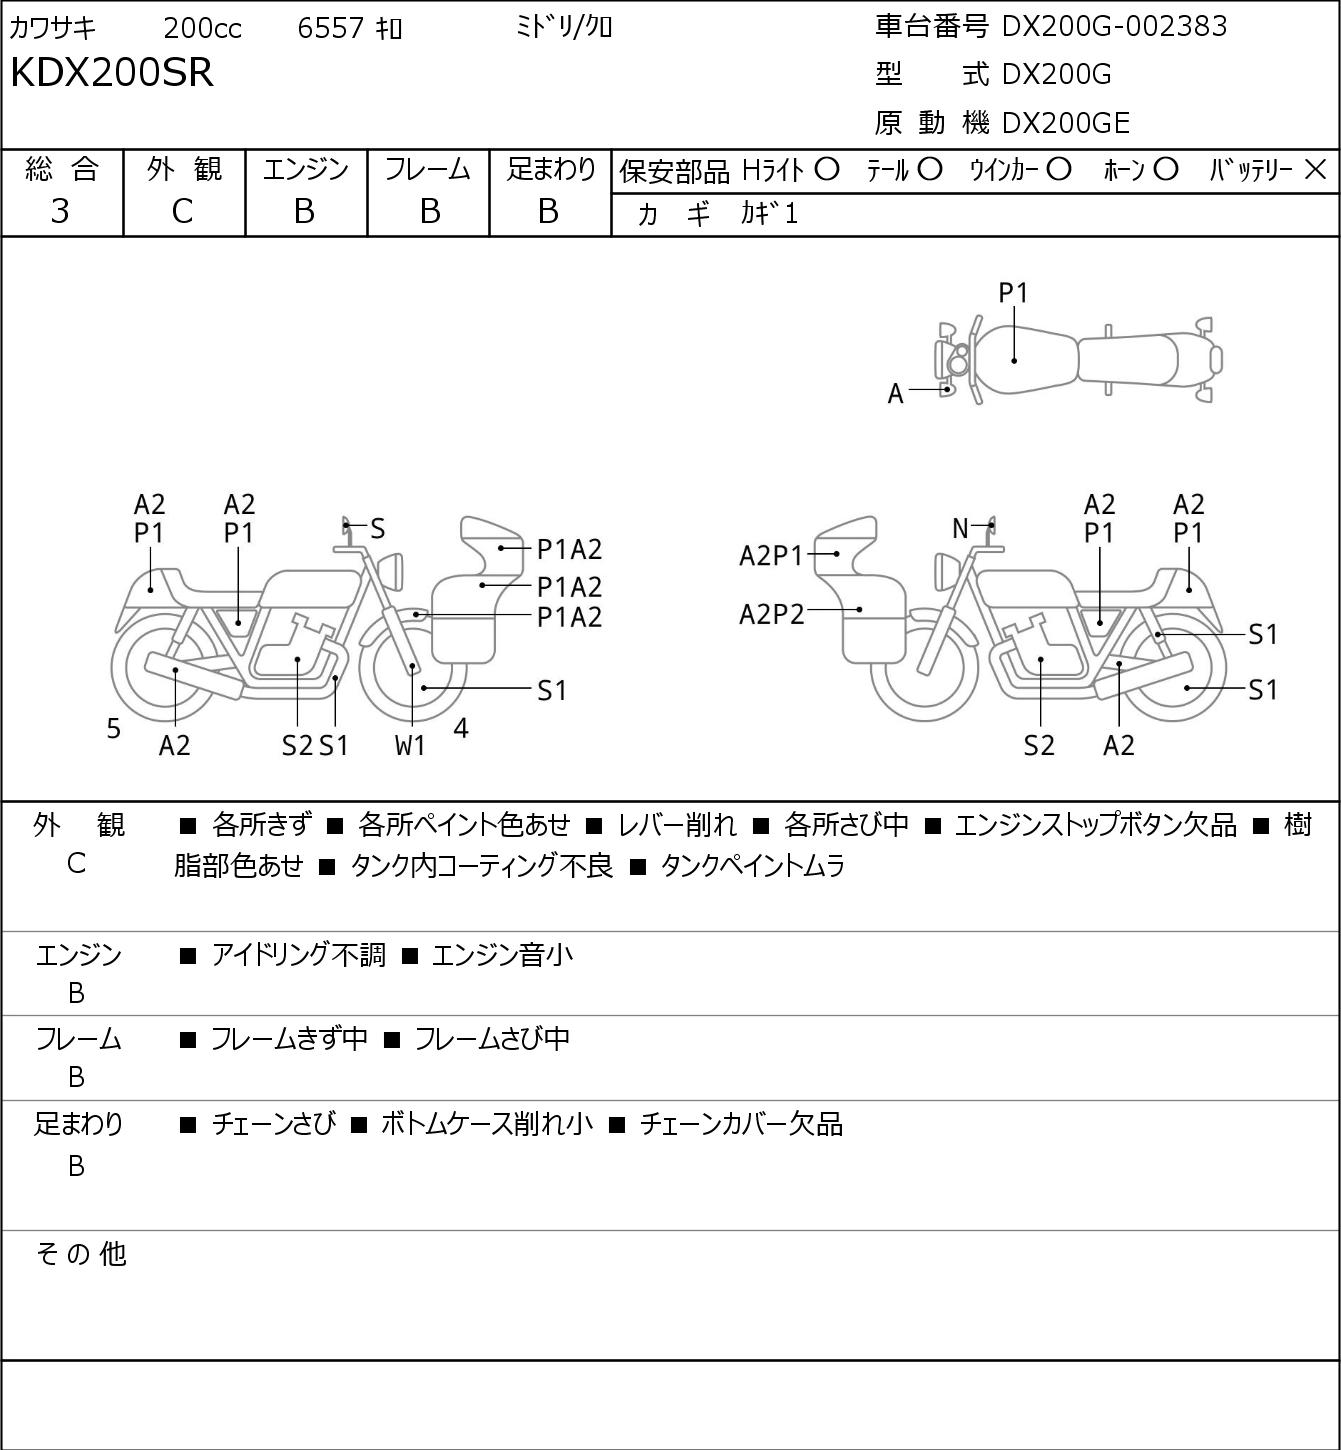 Kawasaki KDX 200 SR DX200G г. 6557